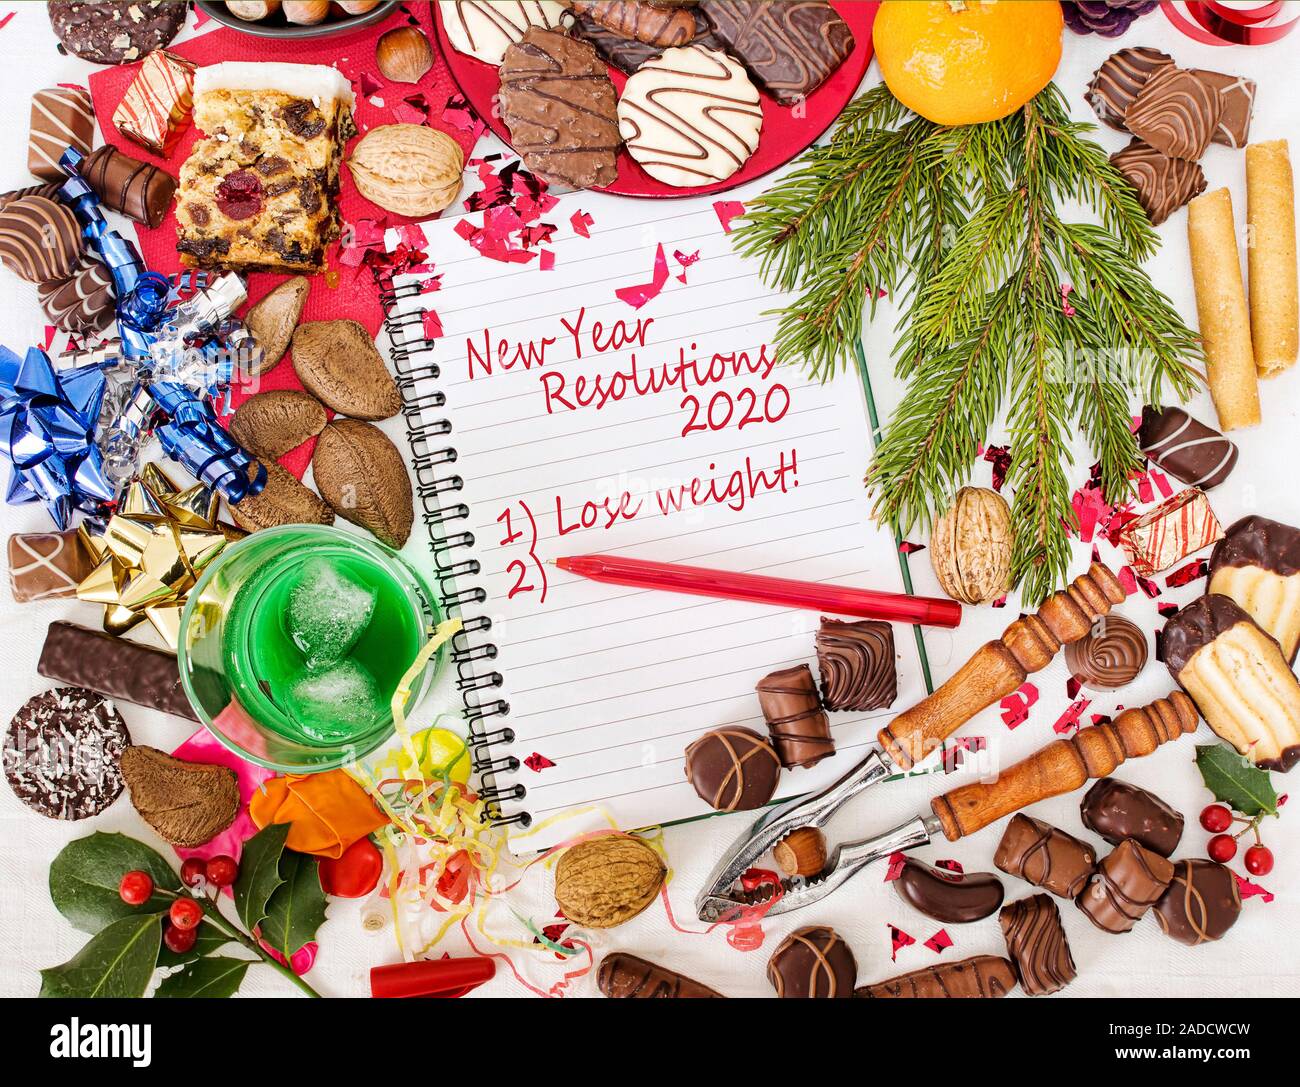 Il Pranzo Di Natale 2020.Pranzo Di Natale Festa E Nuovo Anno Risoluzione Alla Dieta 2020 Foto Stock Alamy